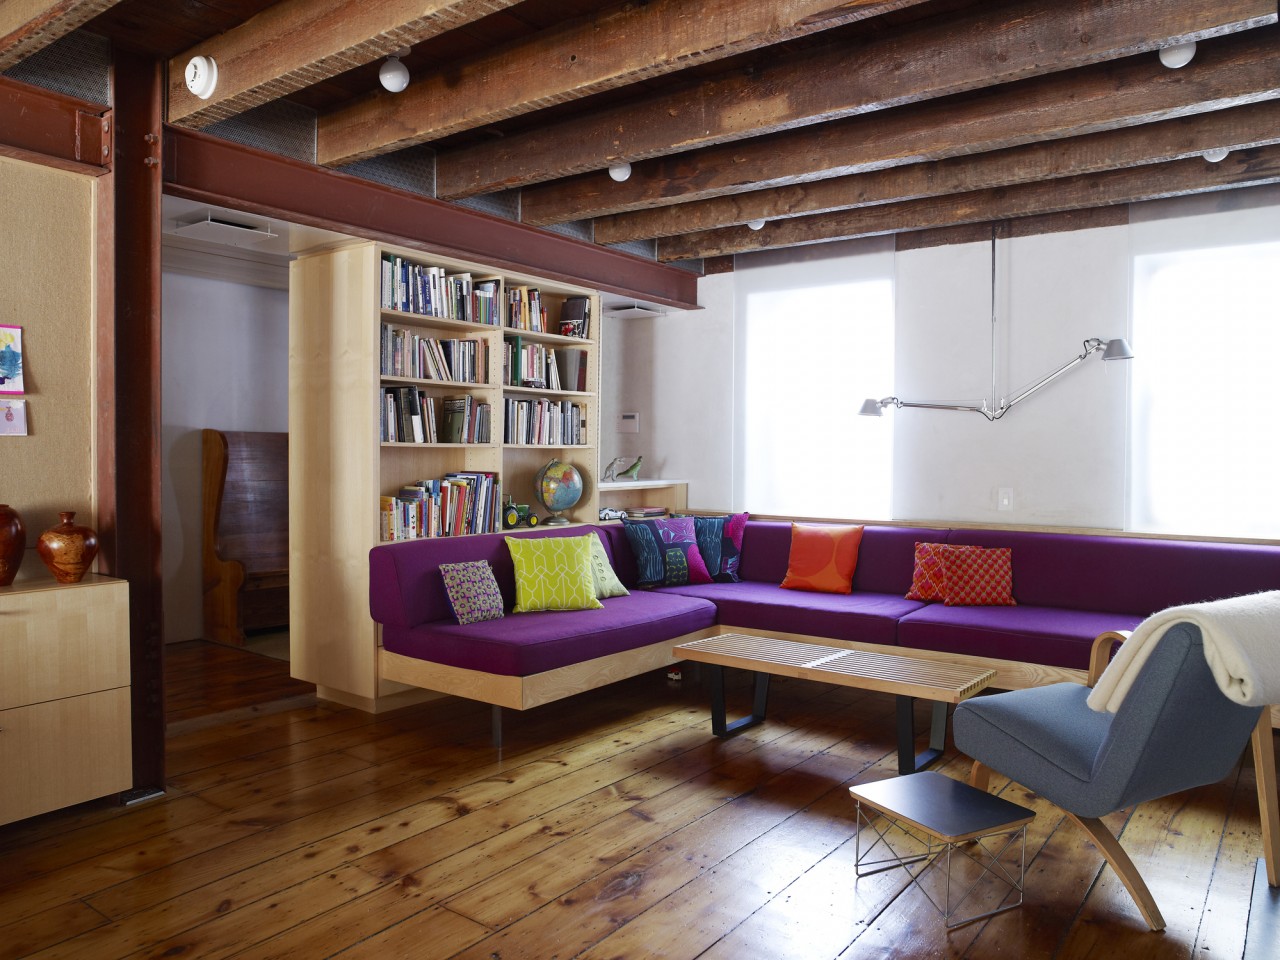 Цветовое оформление интерьера квартиры по фэн-шую для исполнения желаний